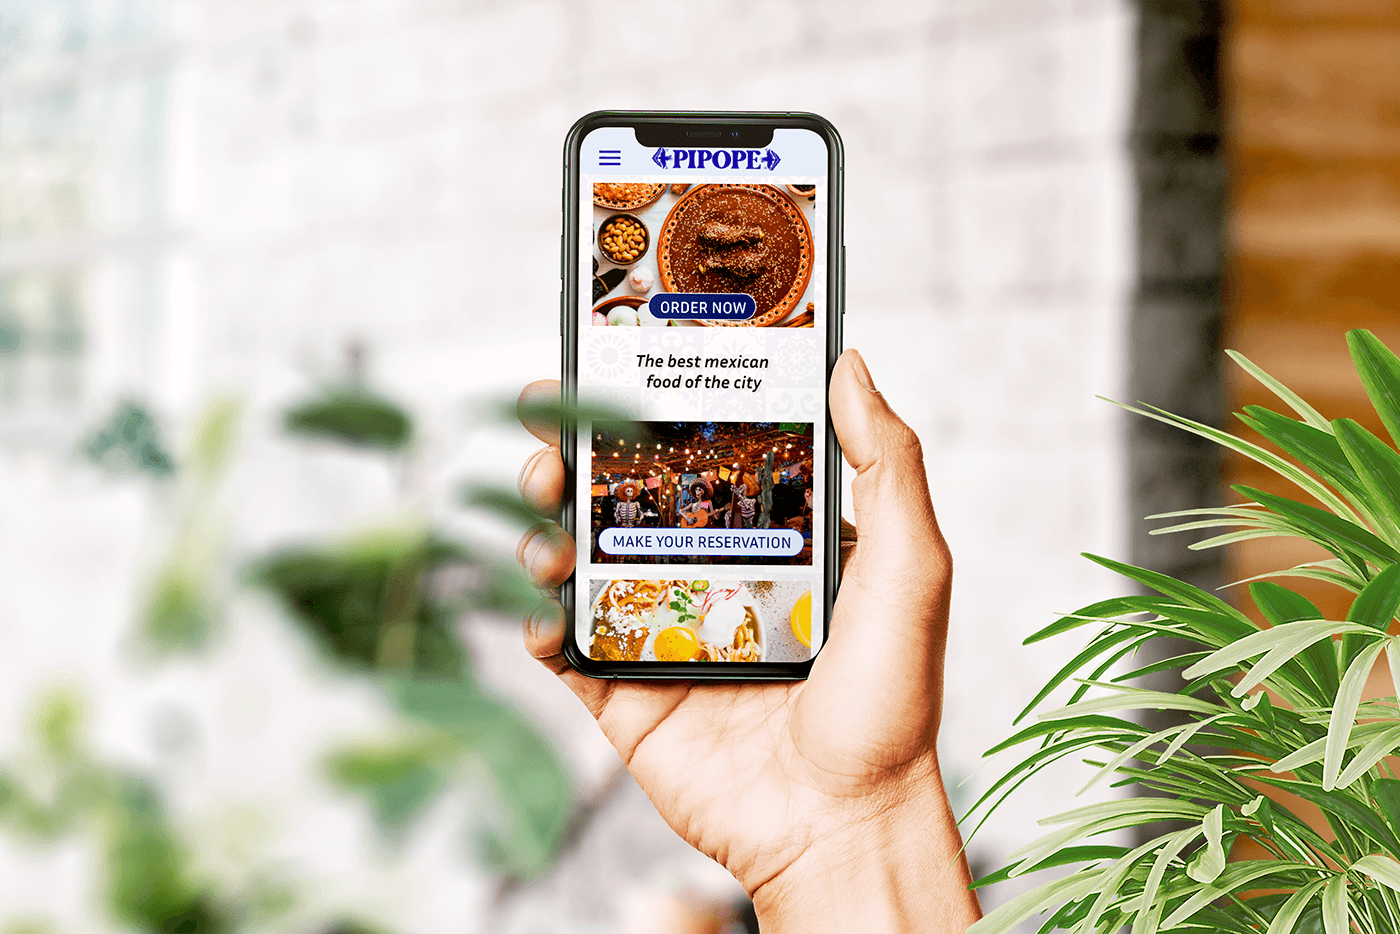 diseño gráfico marketing digital UX design comida Food  restaurant mercadotecnia publicidad redes sociales Advertising 